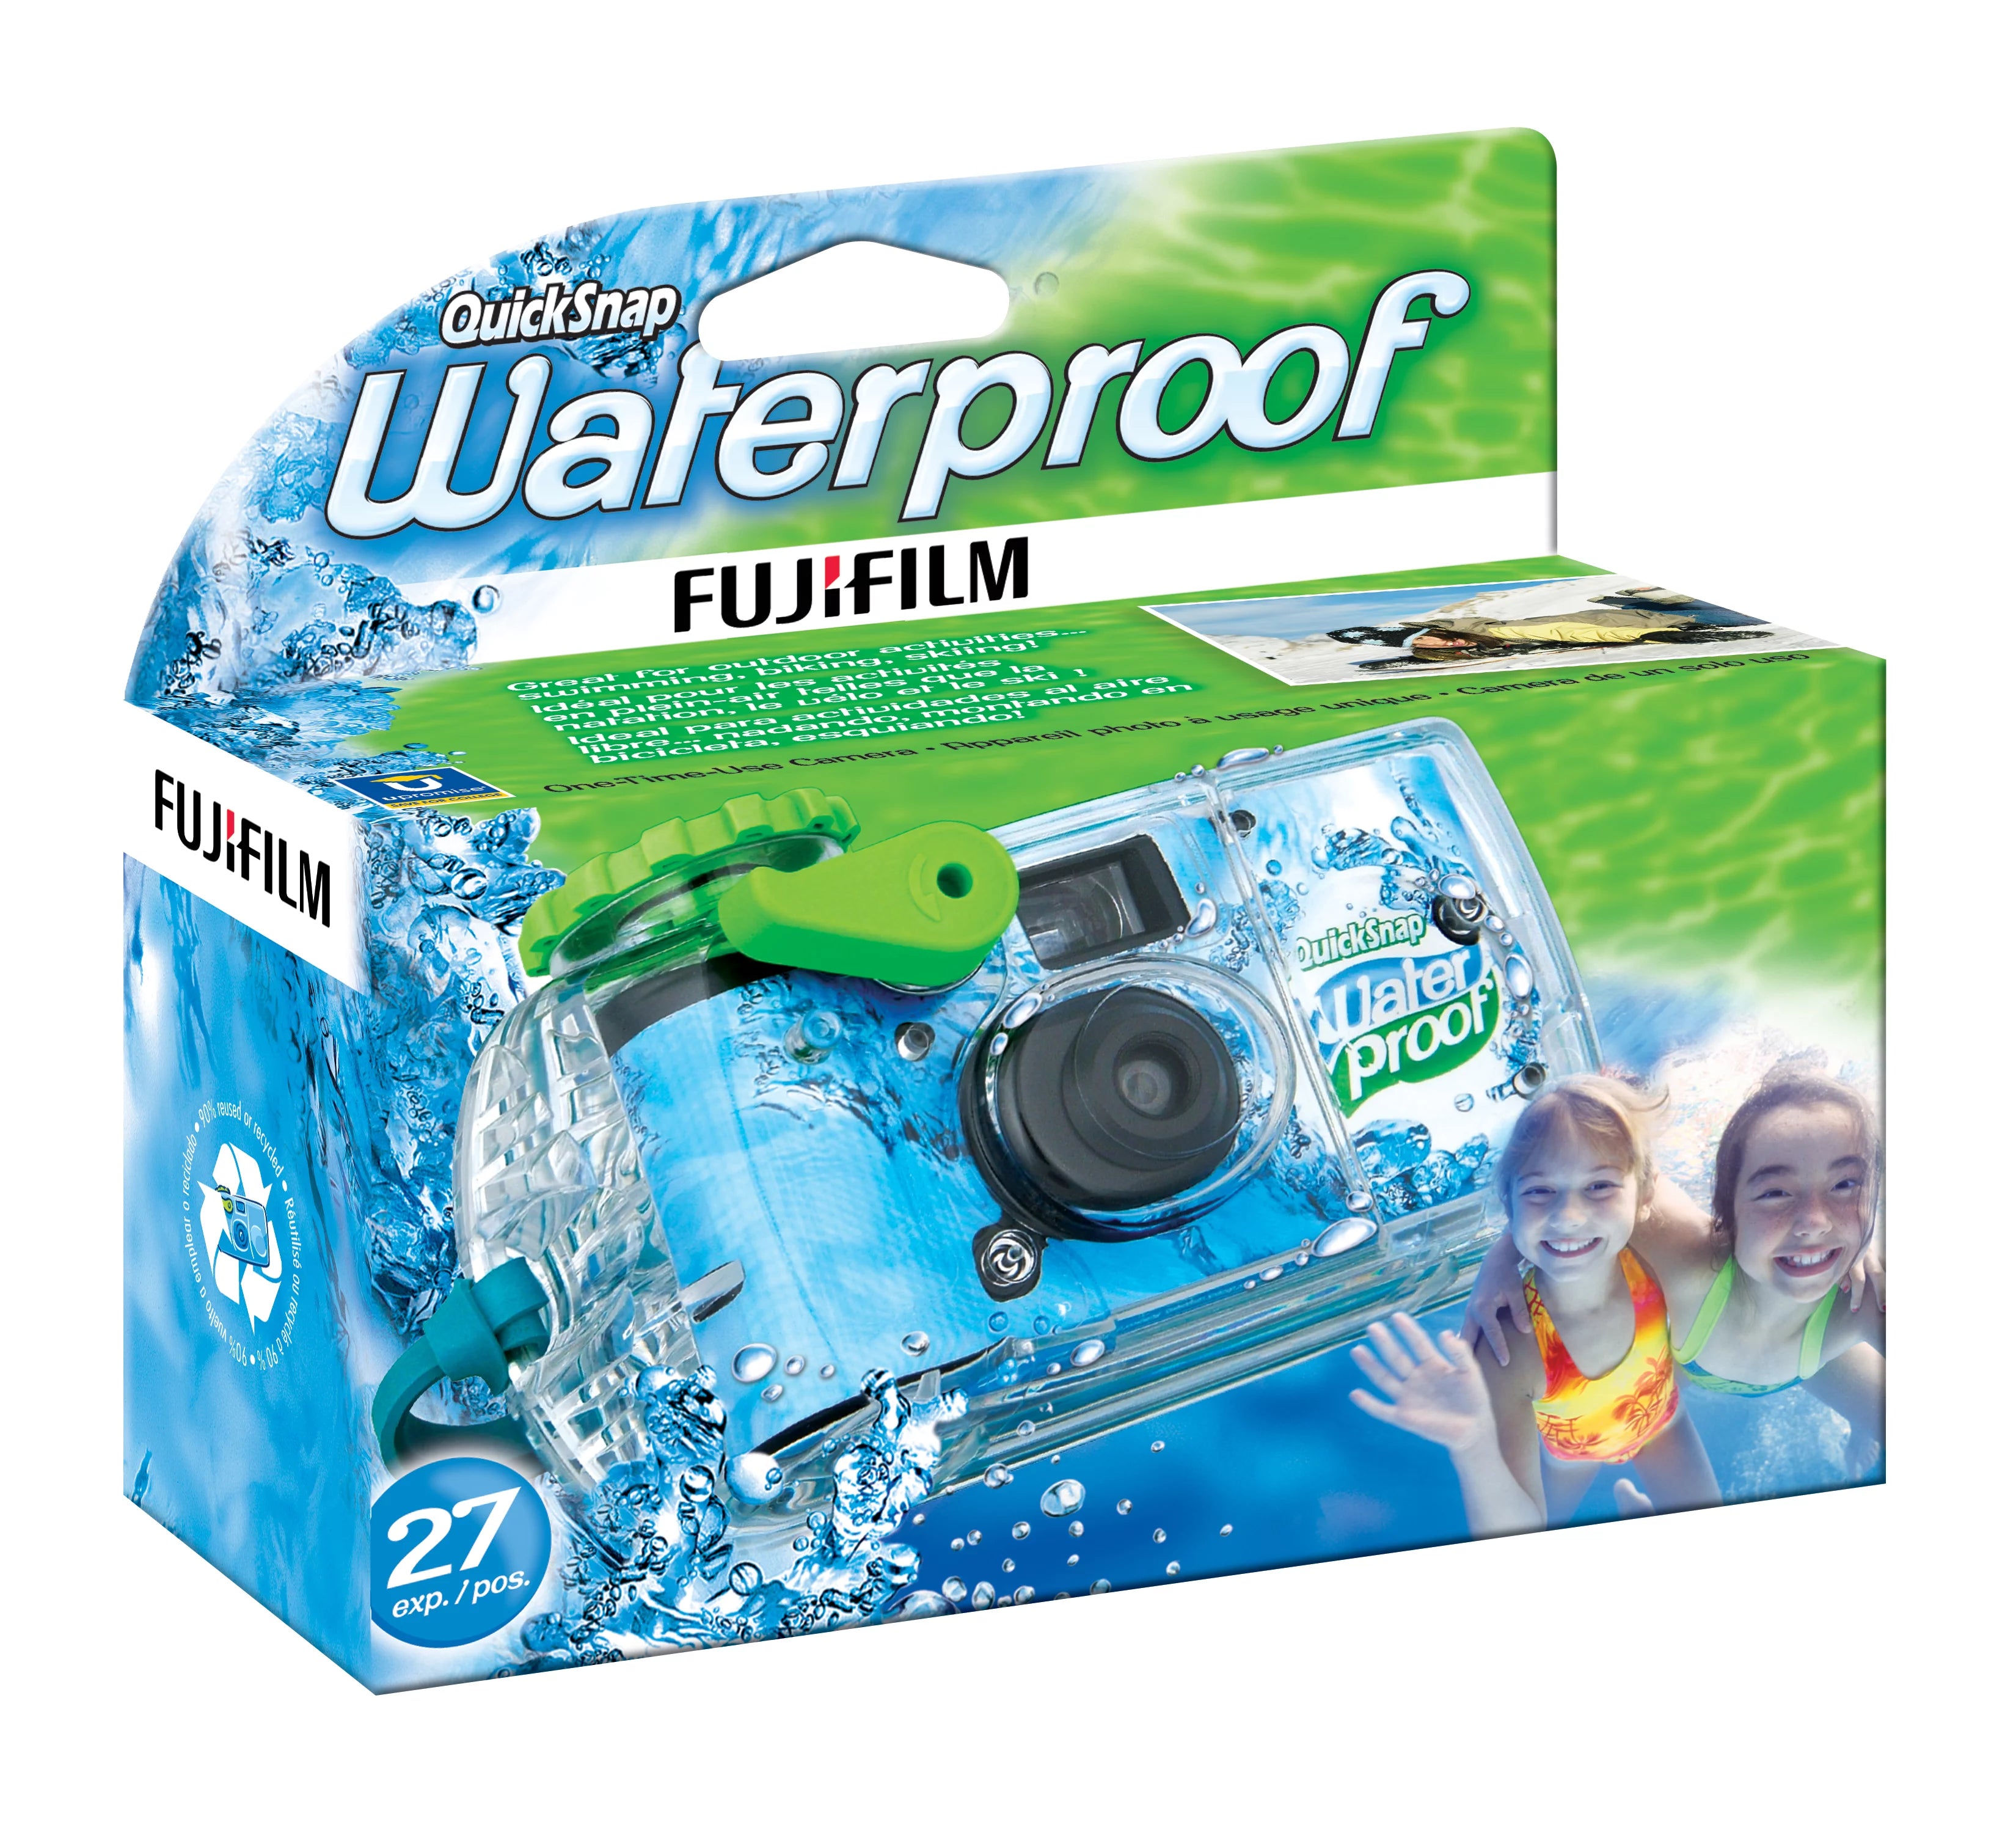 Cámara desechable Fujifilm QuickSnap Super 800 con Flash 27